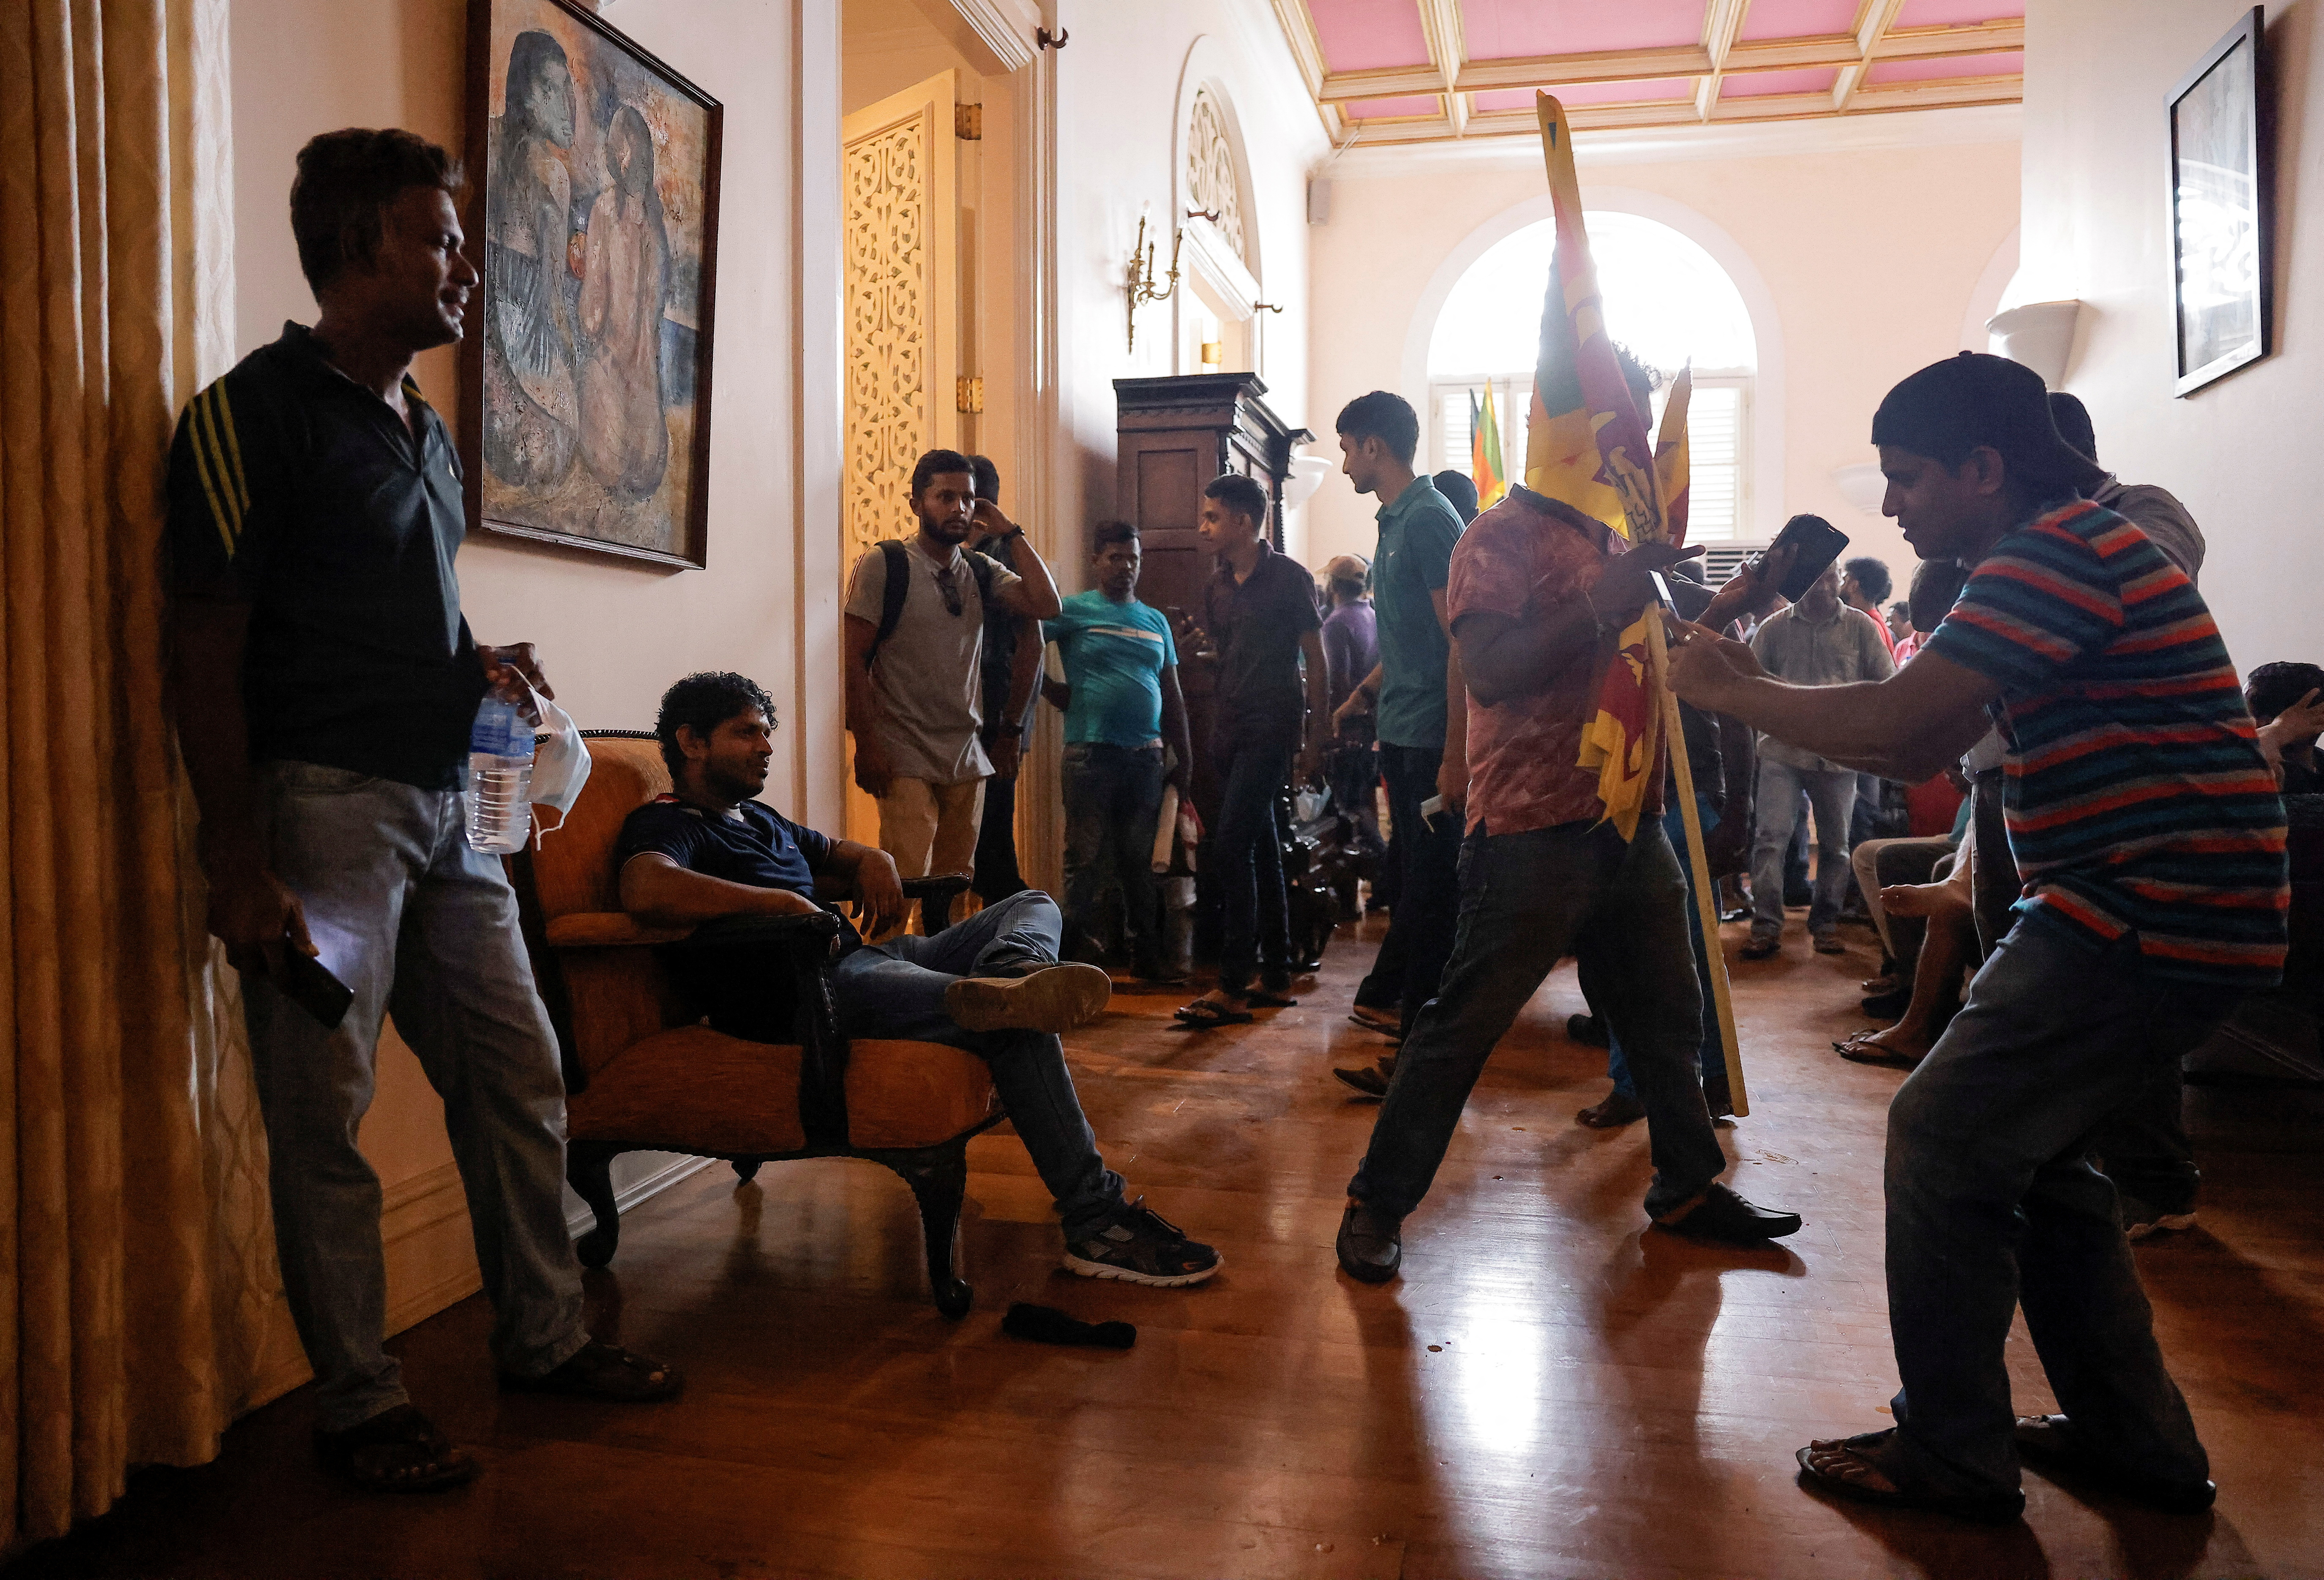 Un manifestante posa para una fotografía después de entrar en la Casa del Presidente durante una protesta, tras la huida del presidente Gotabaya Rajapaksa, en medio de la crisis económica del país, en Colombo, Sri Lanka 9 de julio de 2022. REUTERS/Dinuka Liyanawatte